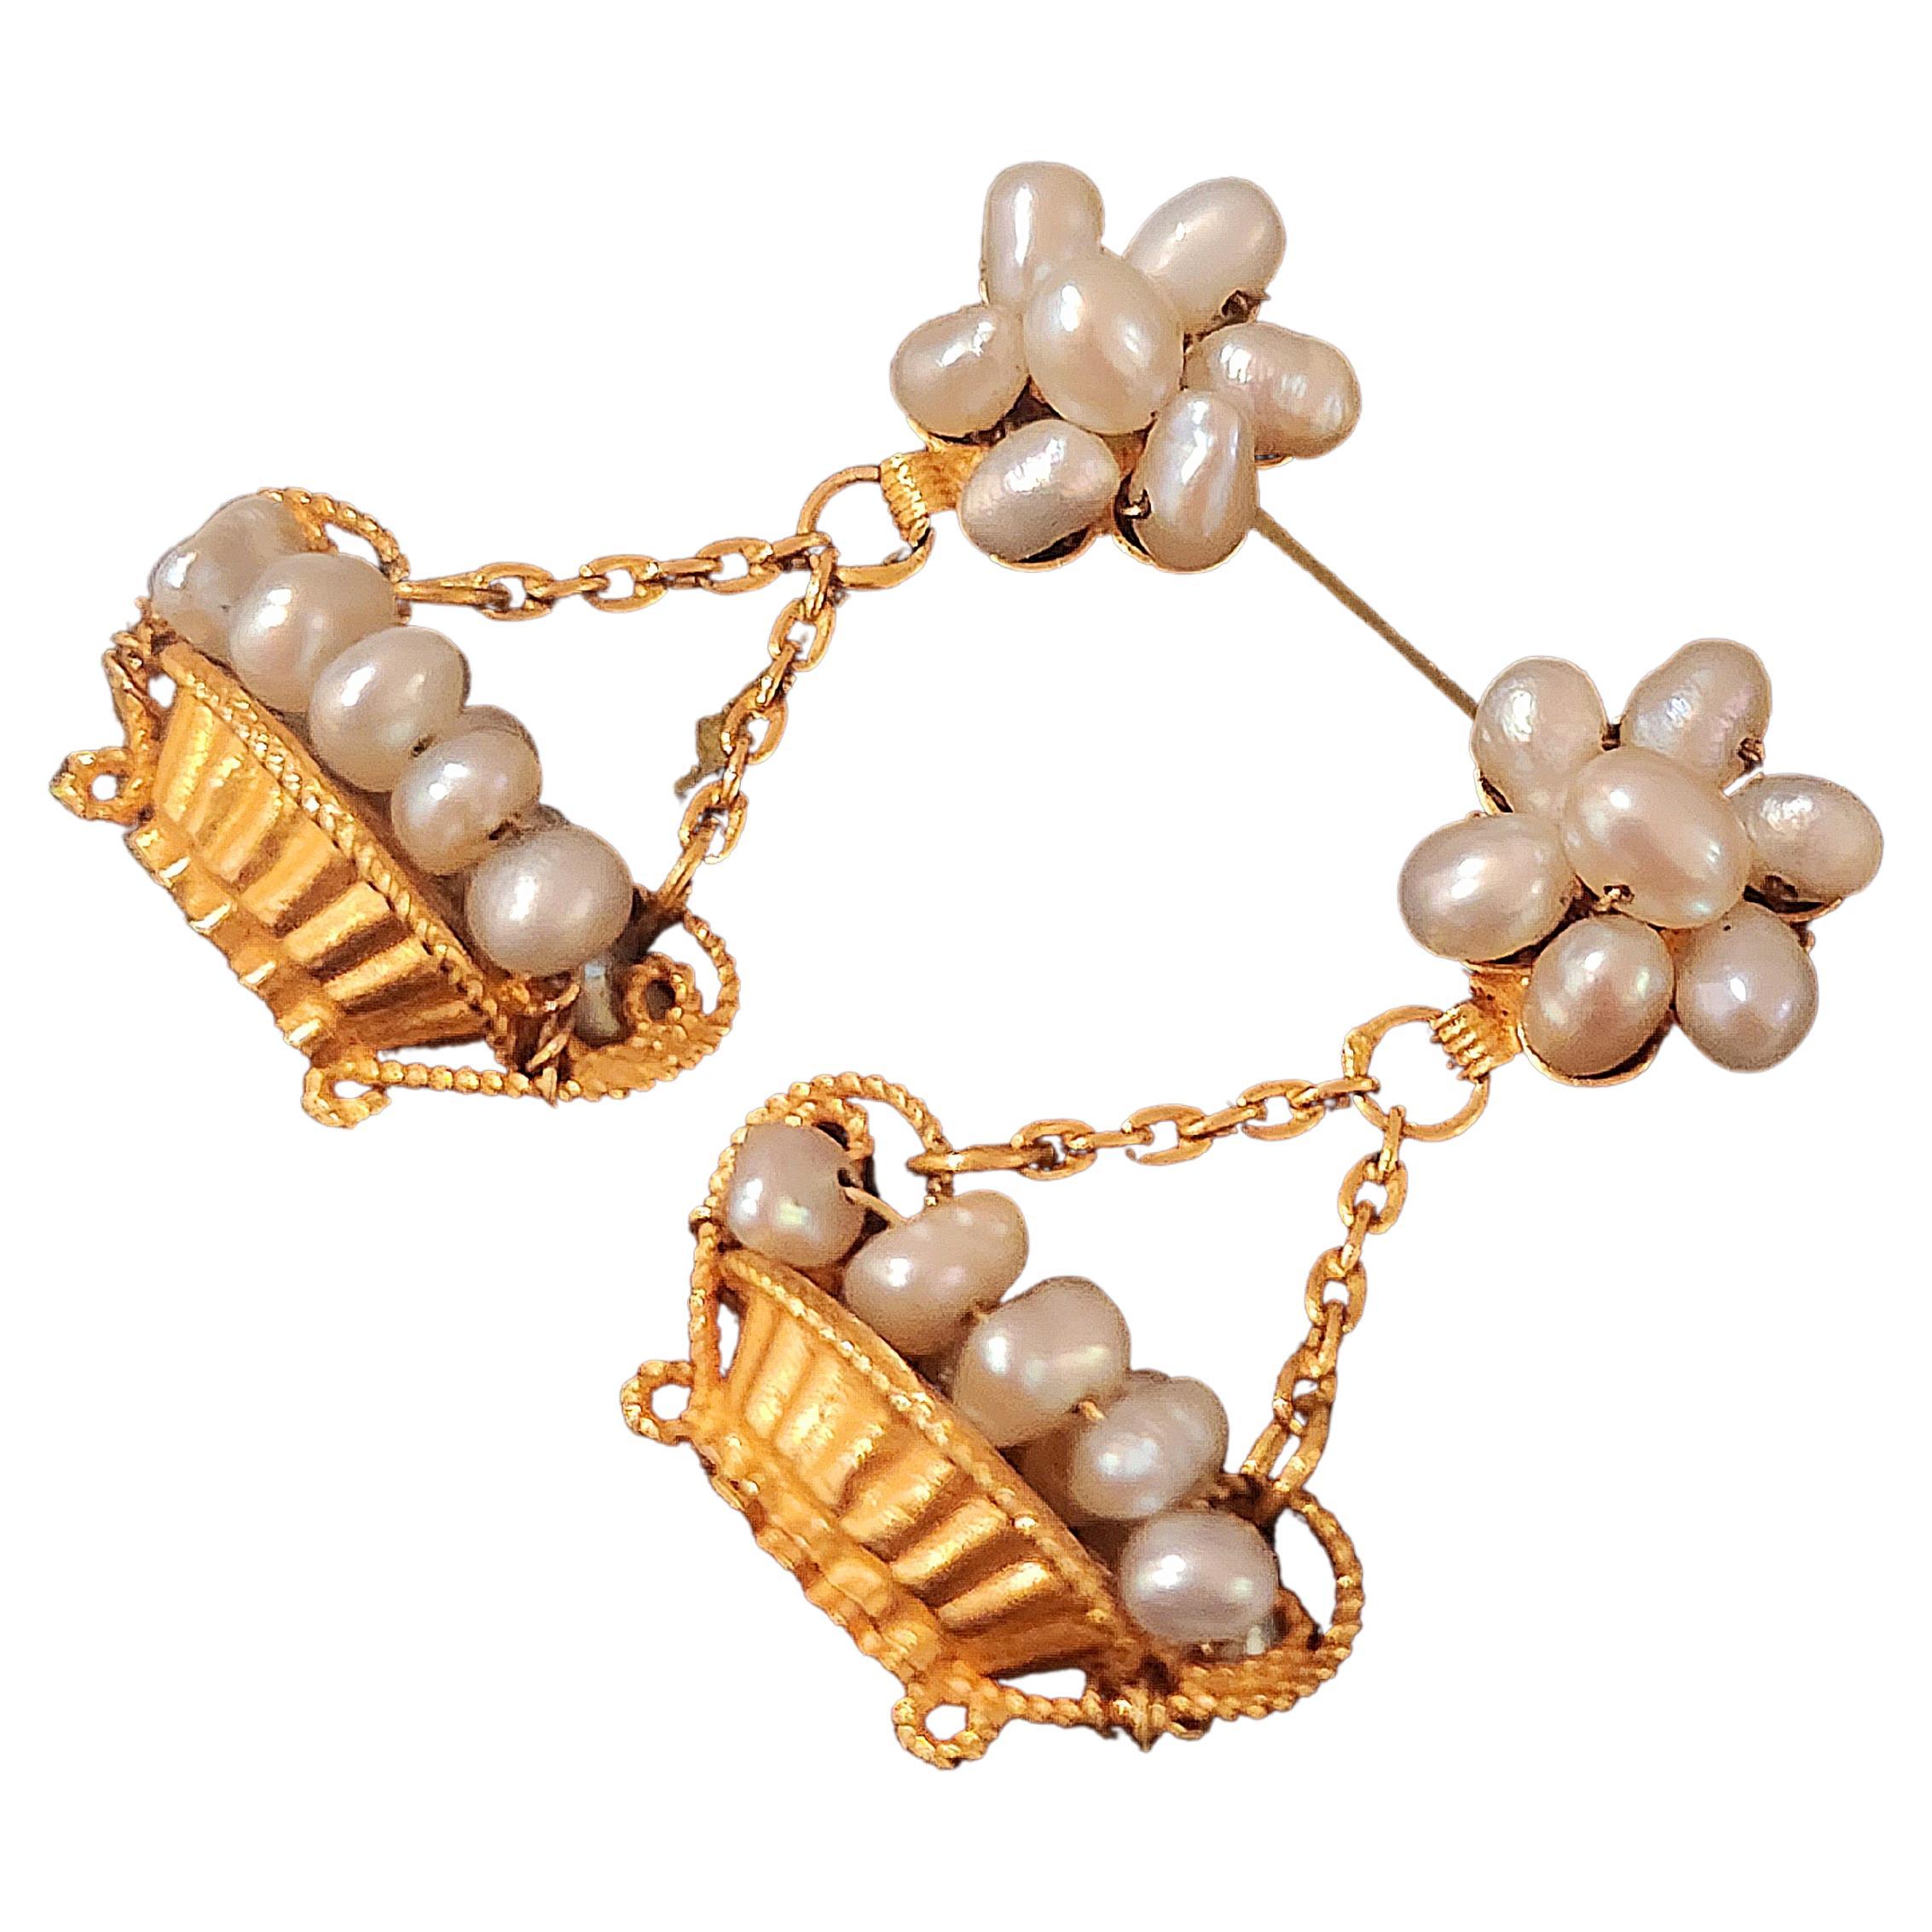 Vintage 1940s baumelnden Ohrringe in 22k hochkarätigem Gelbgold mit natürlichen alten bahrain weißen Perlen Ohrringe in fruite Korb designe mit Gesamtlänge 3cm Halle markiert mit Gold feinsten 